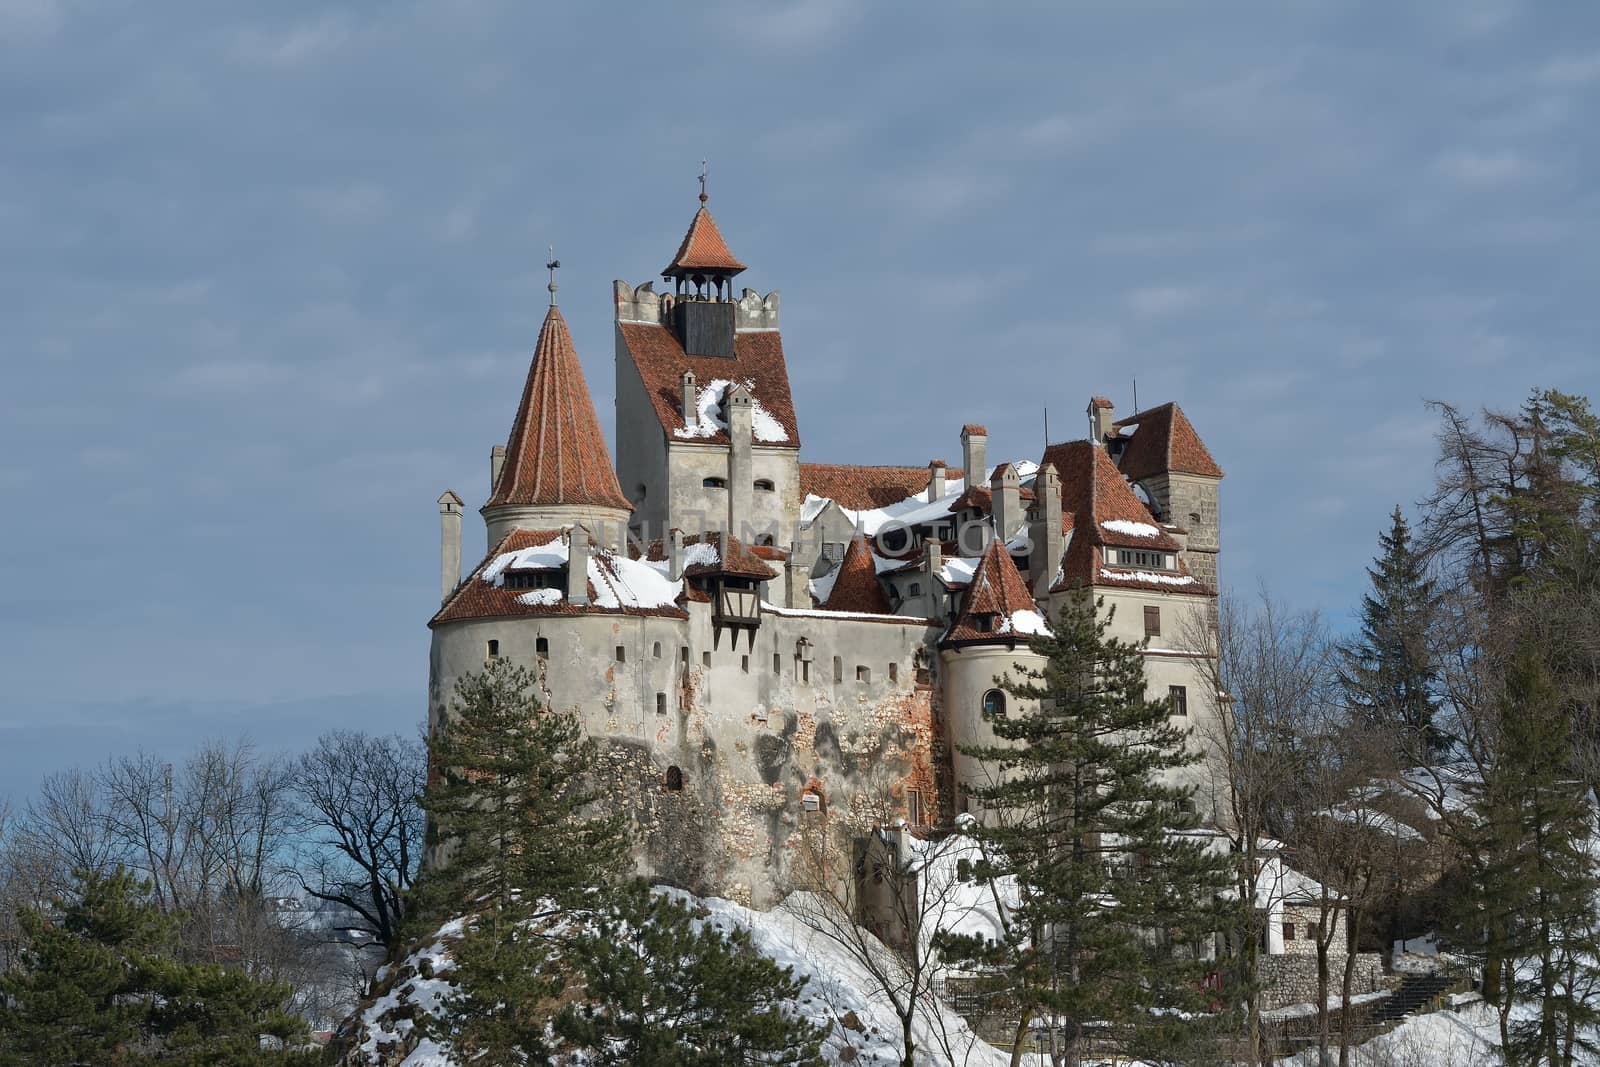 Dracula's Bran Castle in winter